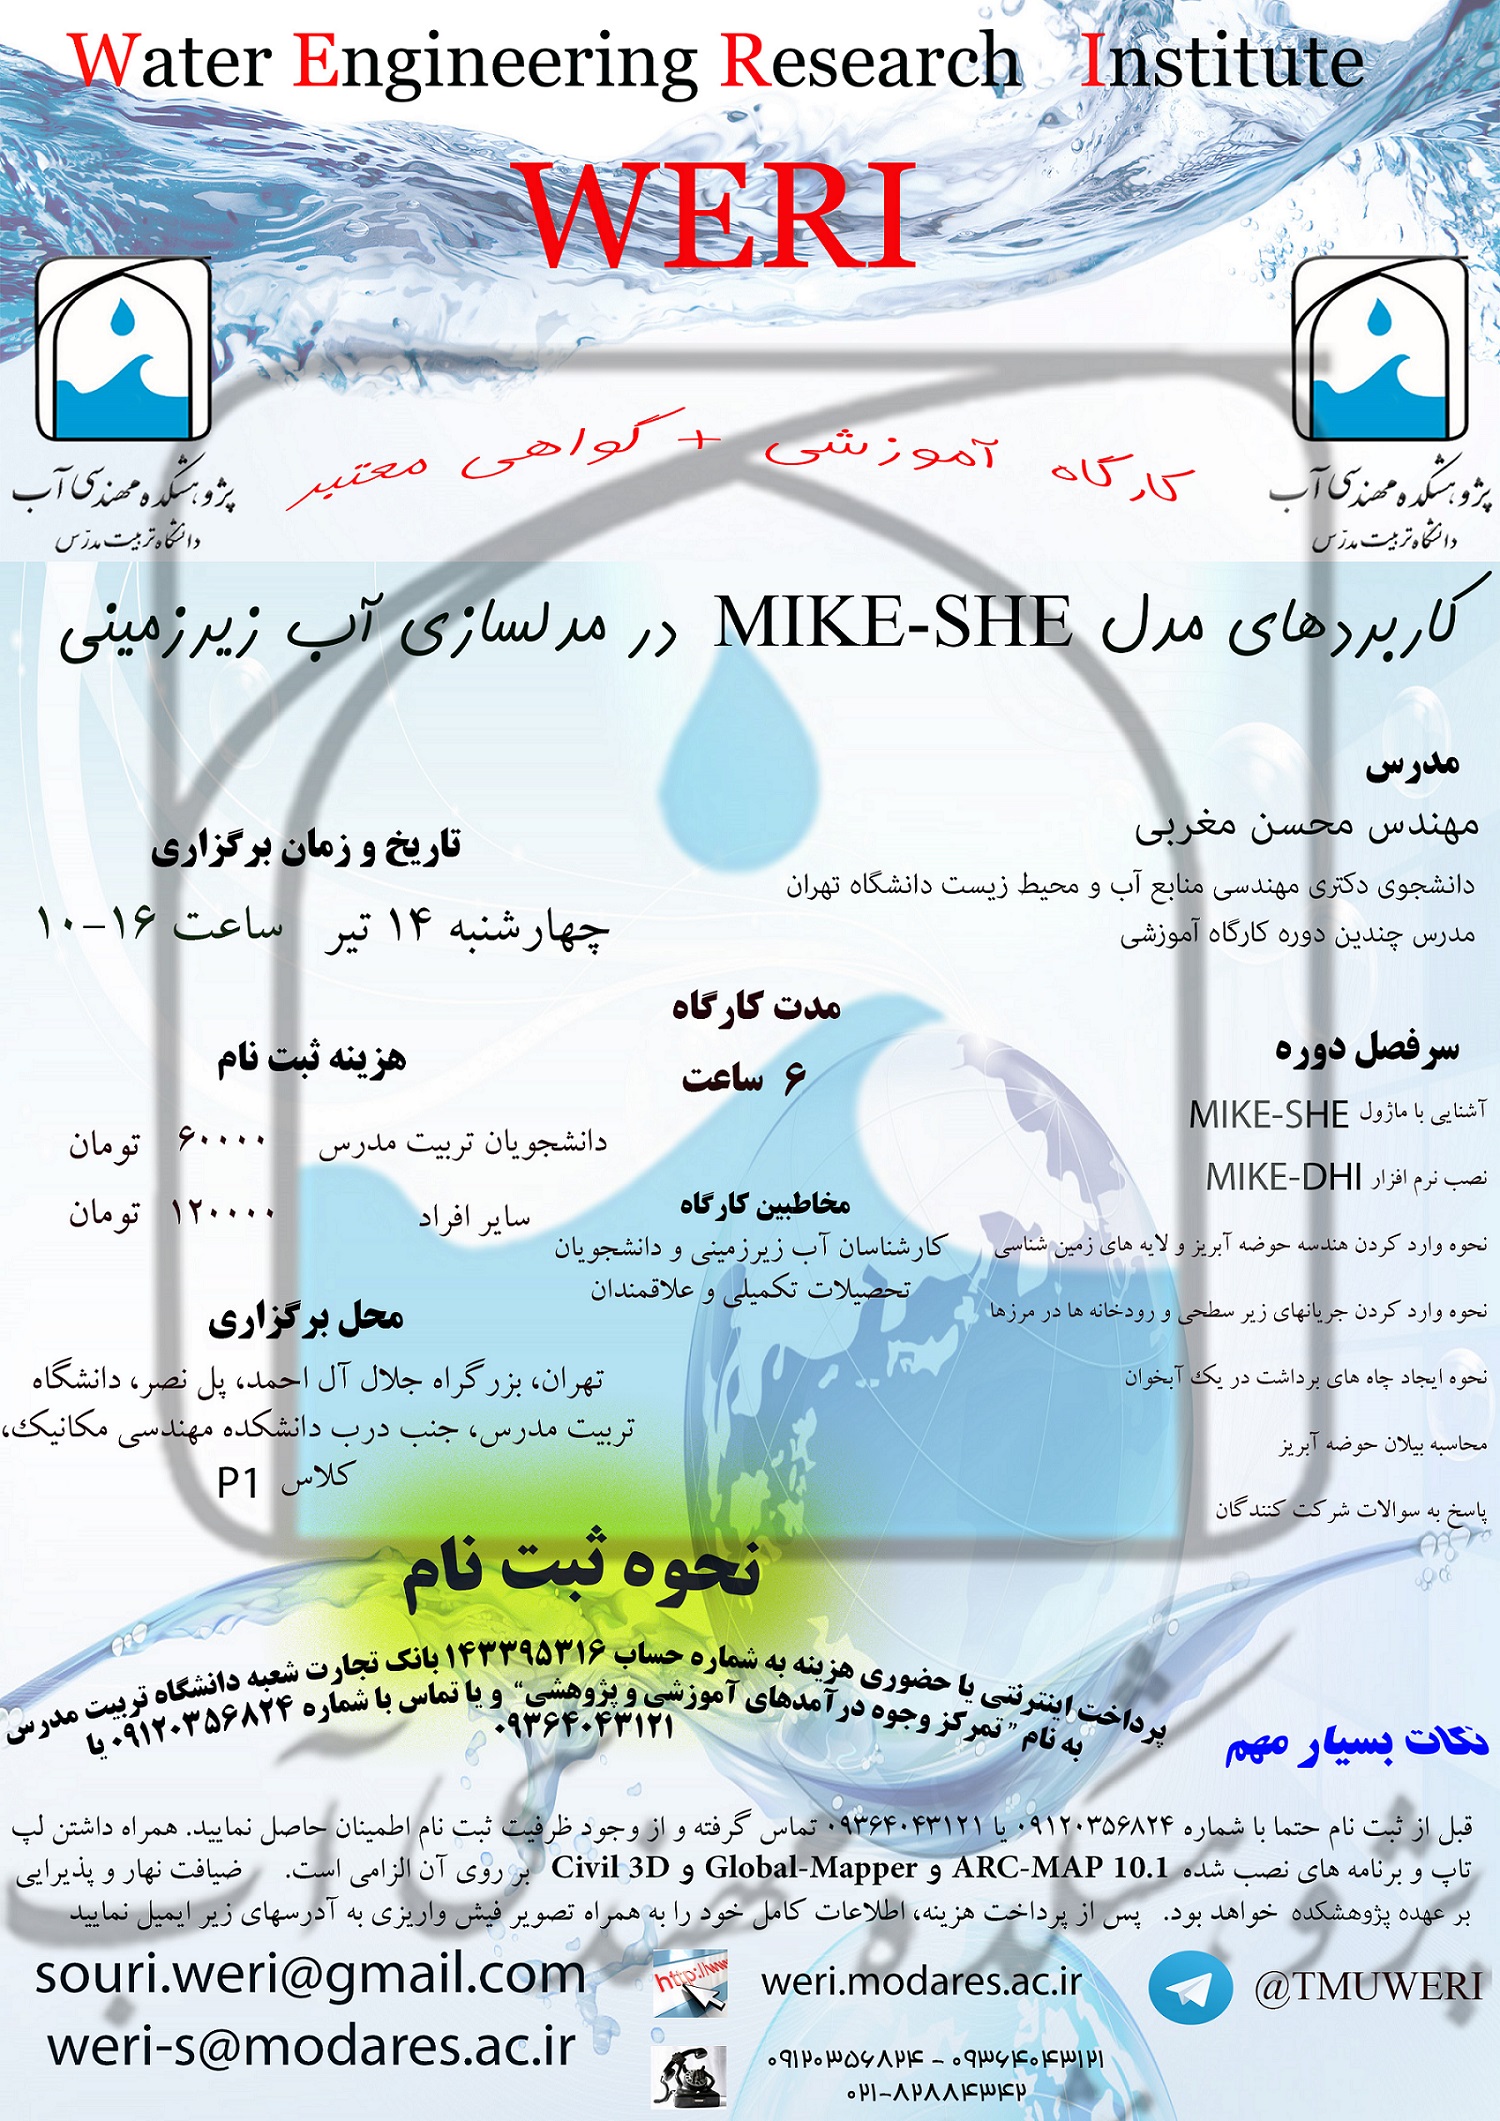 کارگاه آموزشی کاربردهای مدل MIKE-SHE در مدلسازی آب زیرزمینی-چهارشنبه 14 تیر 1396